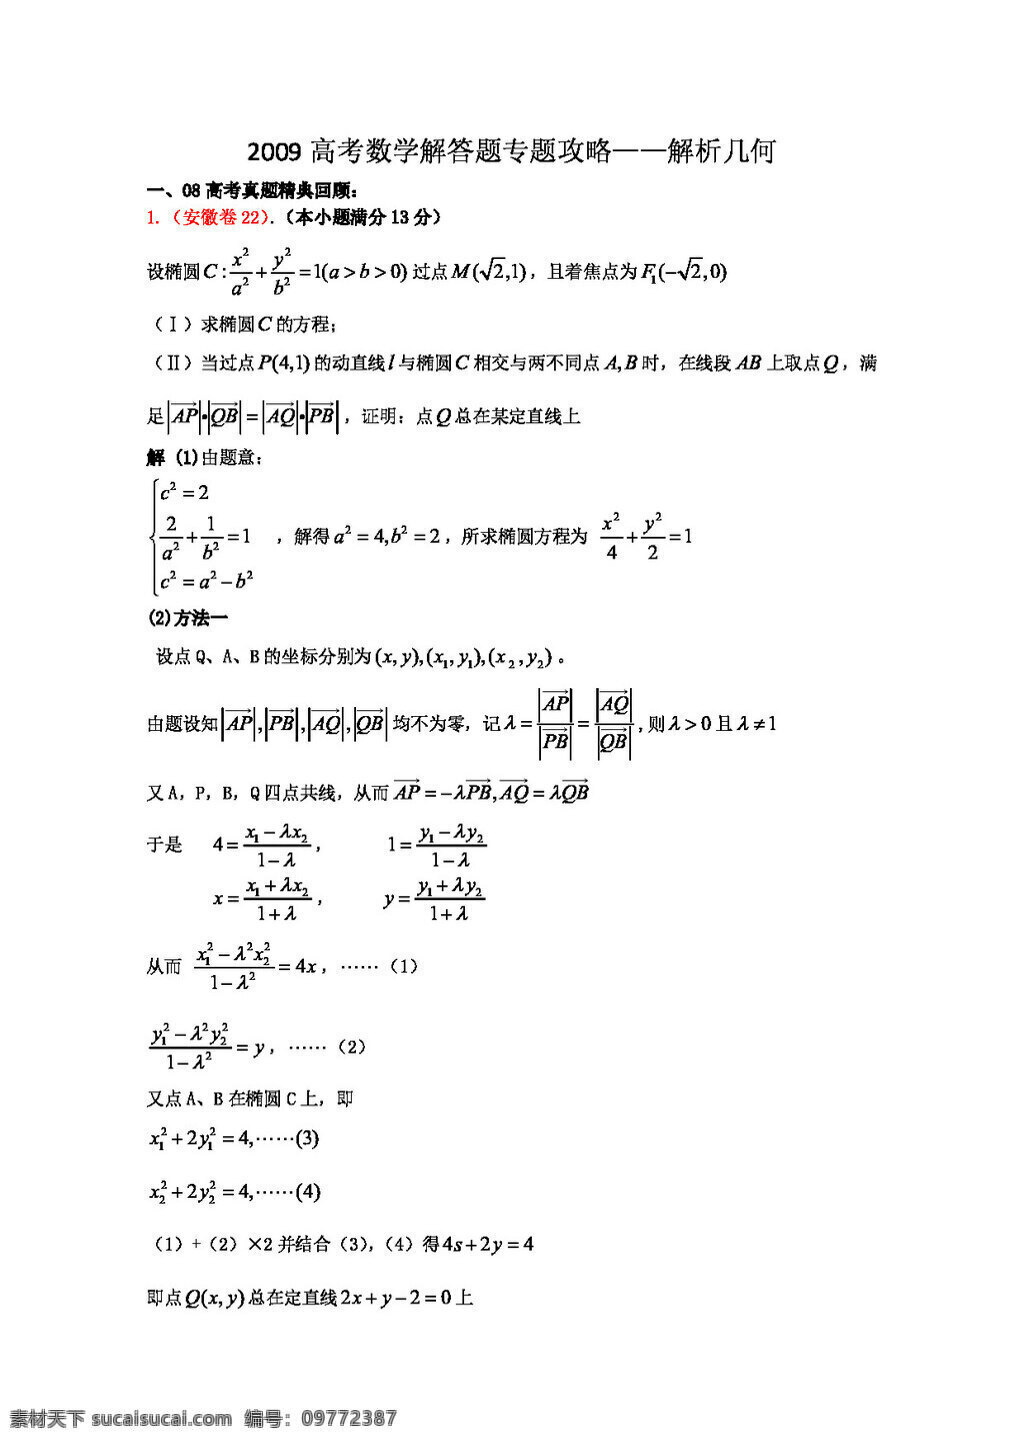 数学 苏 教 版 2009 高考 解答 题 专题 攻略 解析几何 高考专区 试卷 苏教版